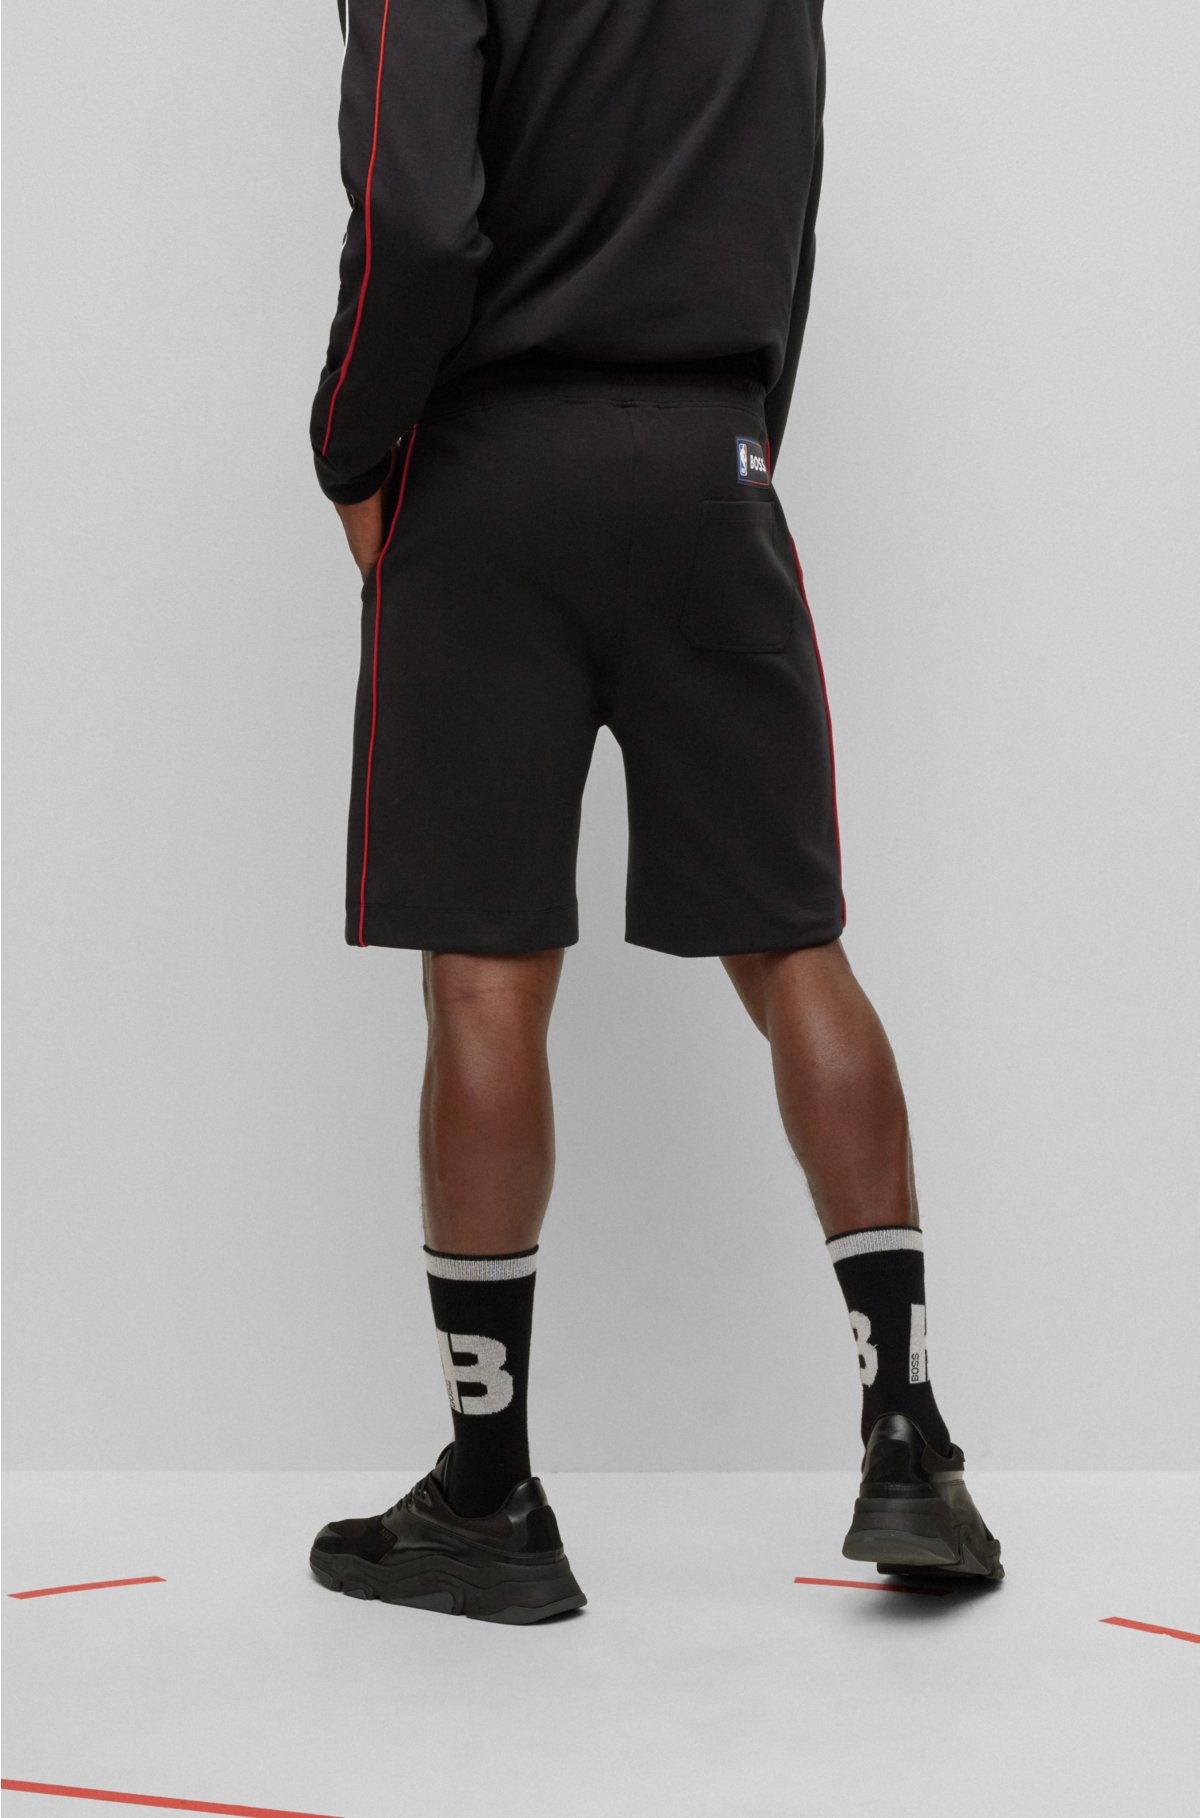 Nike Chicago Bulls Icon Edition Swingman NBA Short Boys